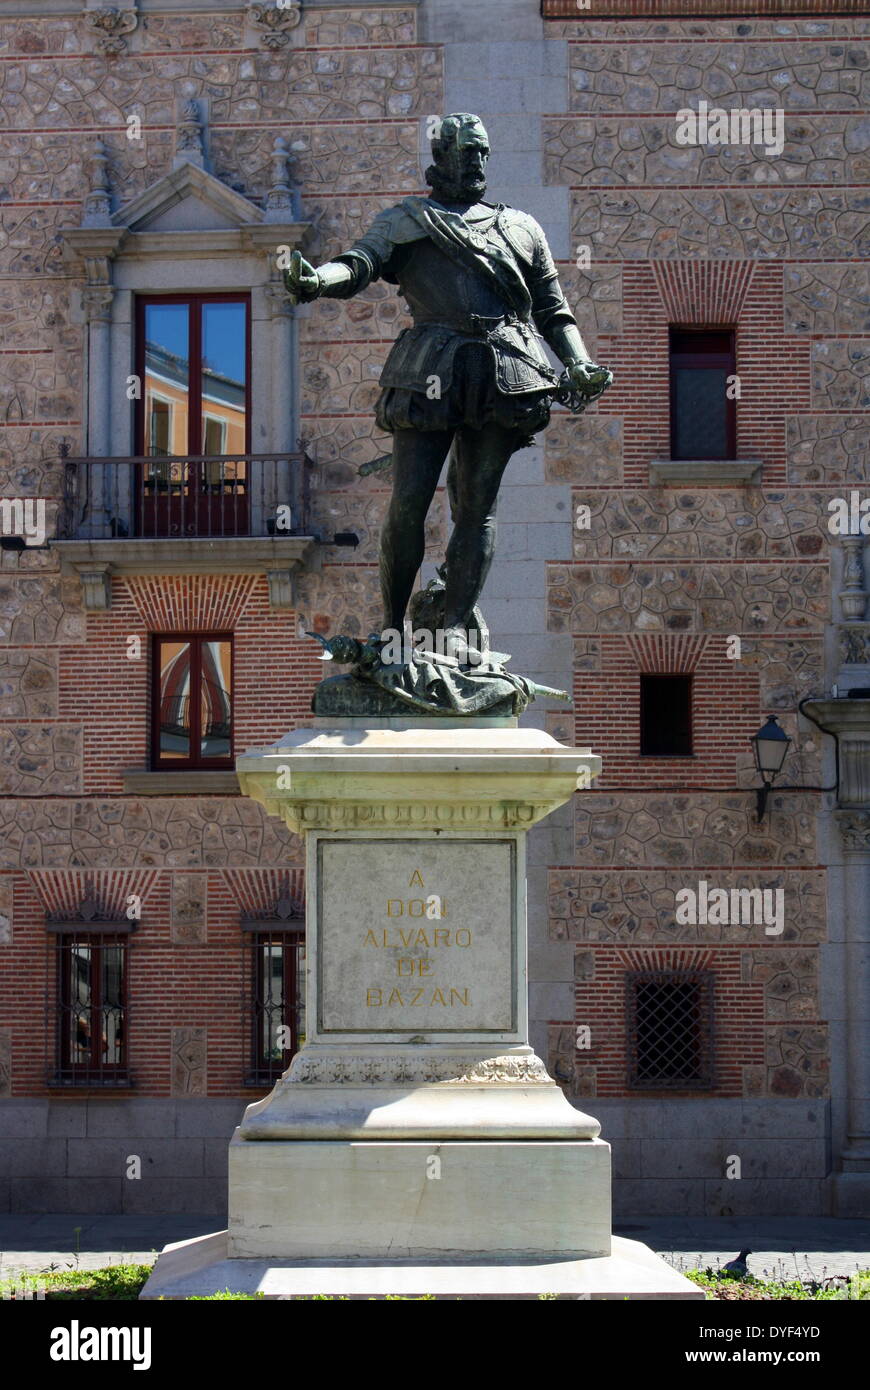 Plaza de la Villa 2013. Statue of Alvaro de Bazan, the Spanish Admiral who planned the Armada. Stock Photo